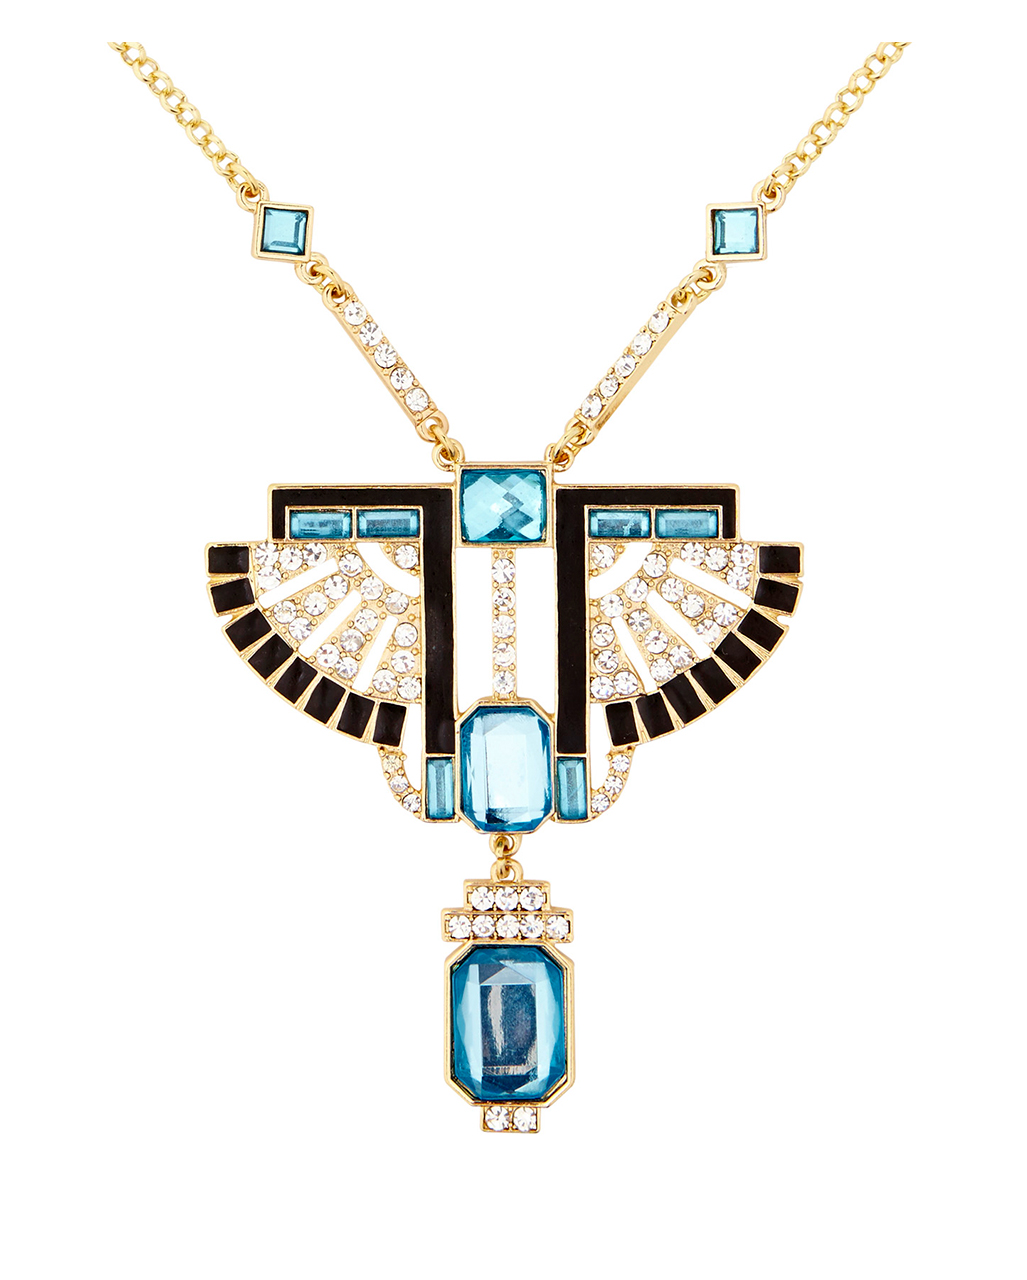 Antike Cleopatra Kette Pharao Halskette Schmuck Kette Ägypterin Kostüm Zubehör 